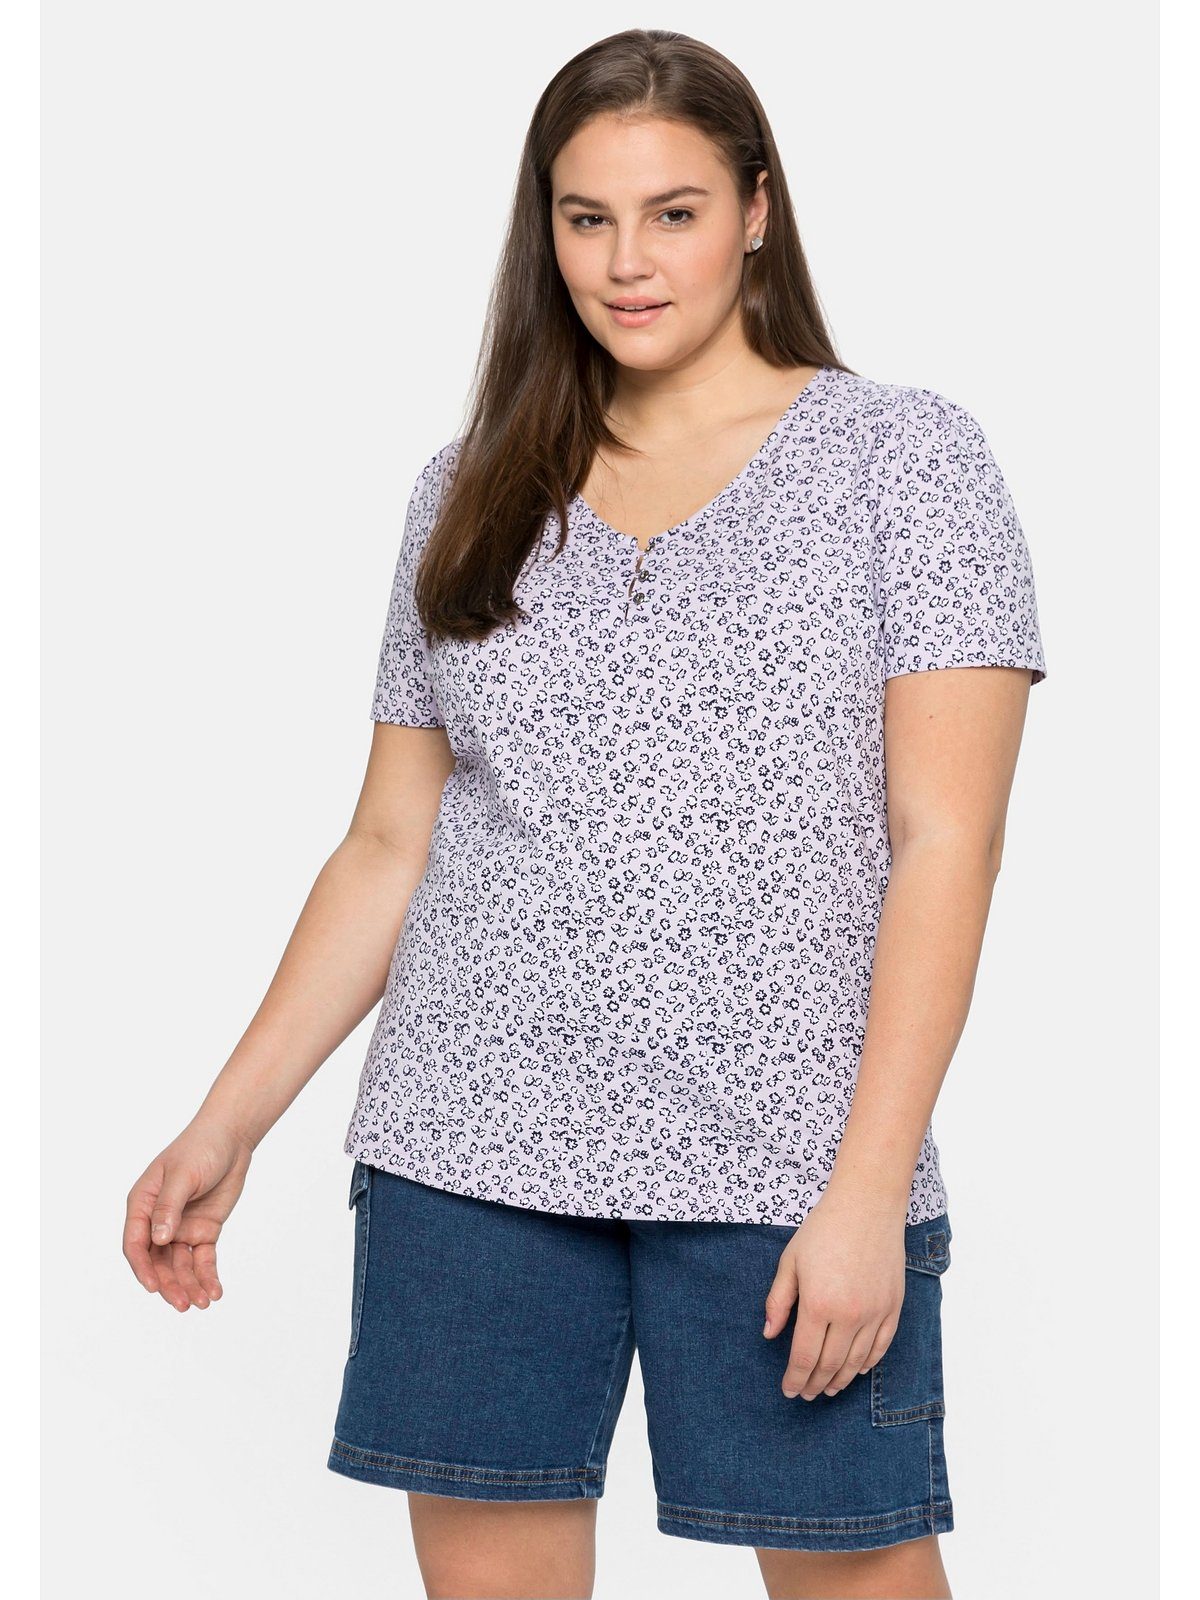 Alloverdruck mit Große zartem Größen Sheego T-Shirt